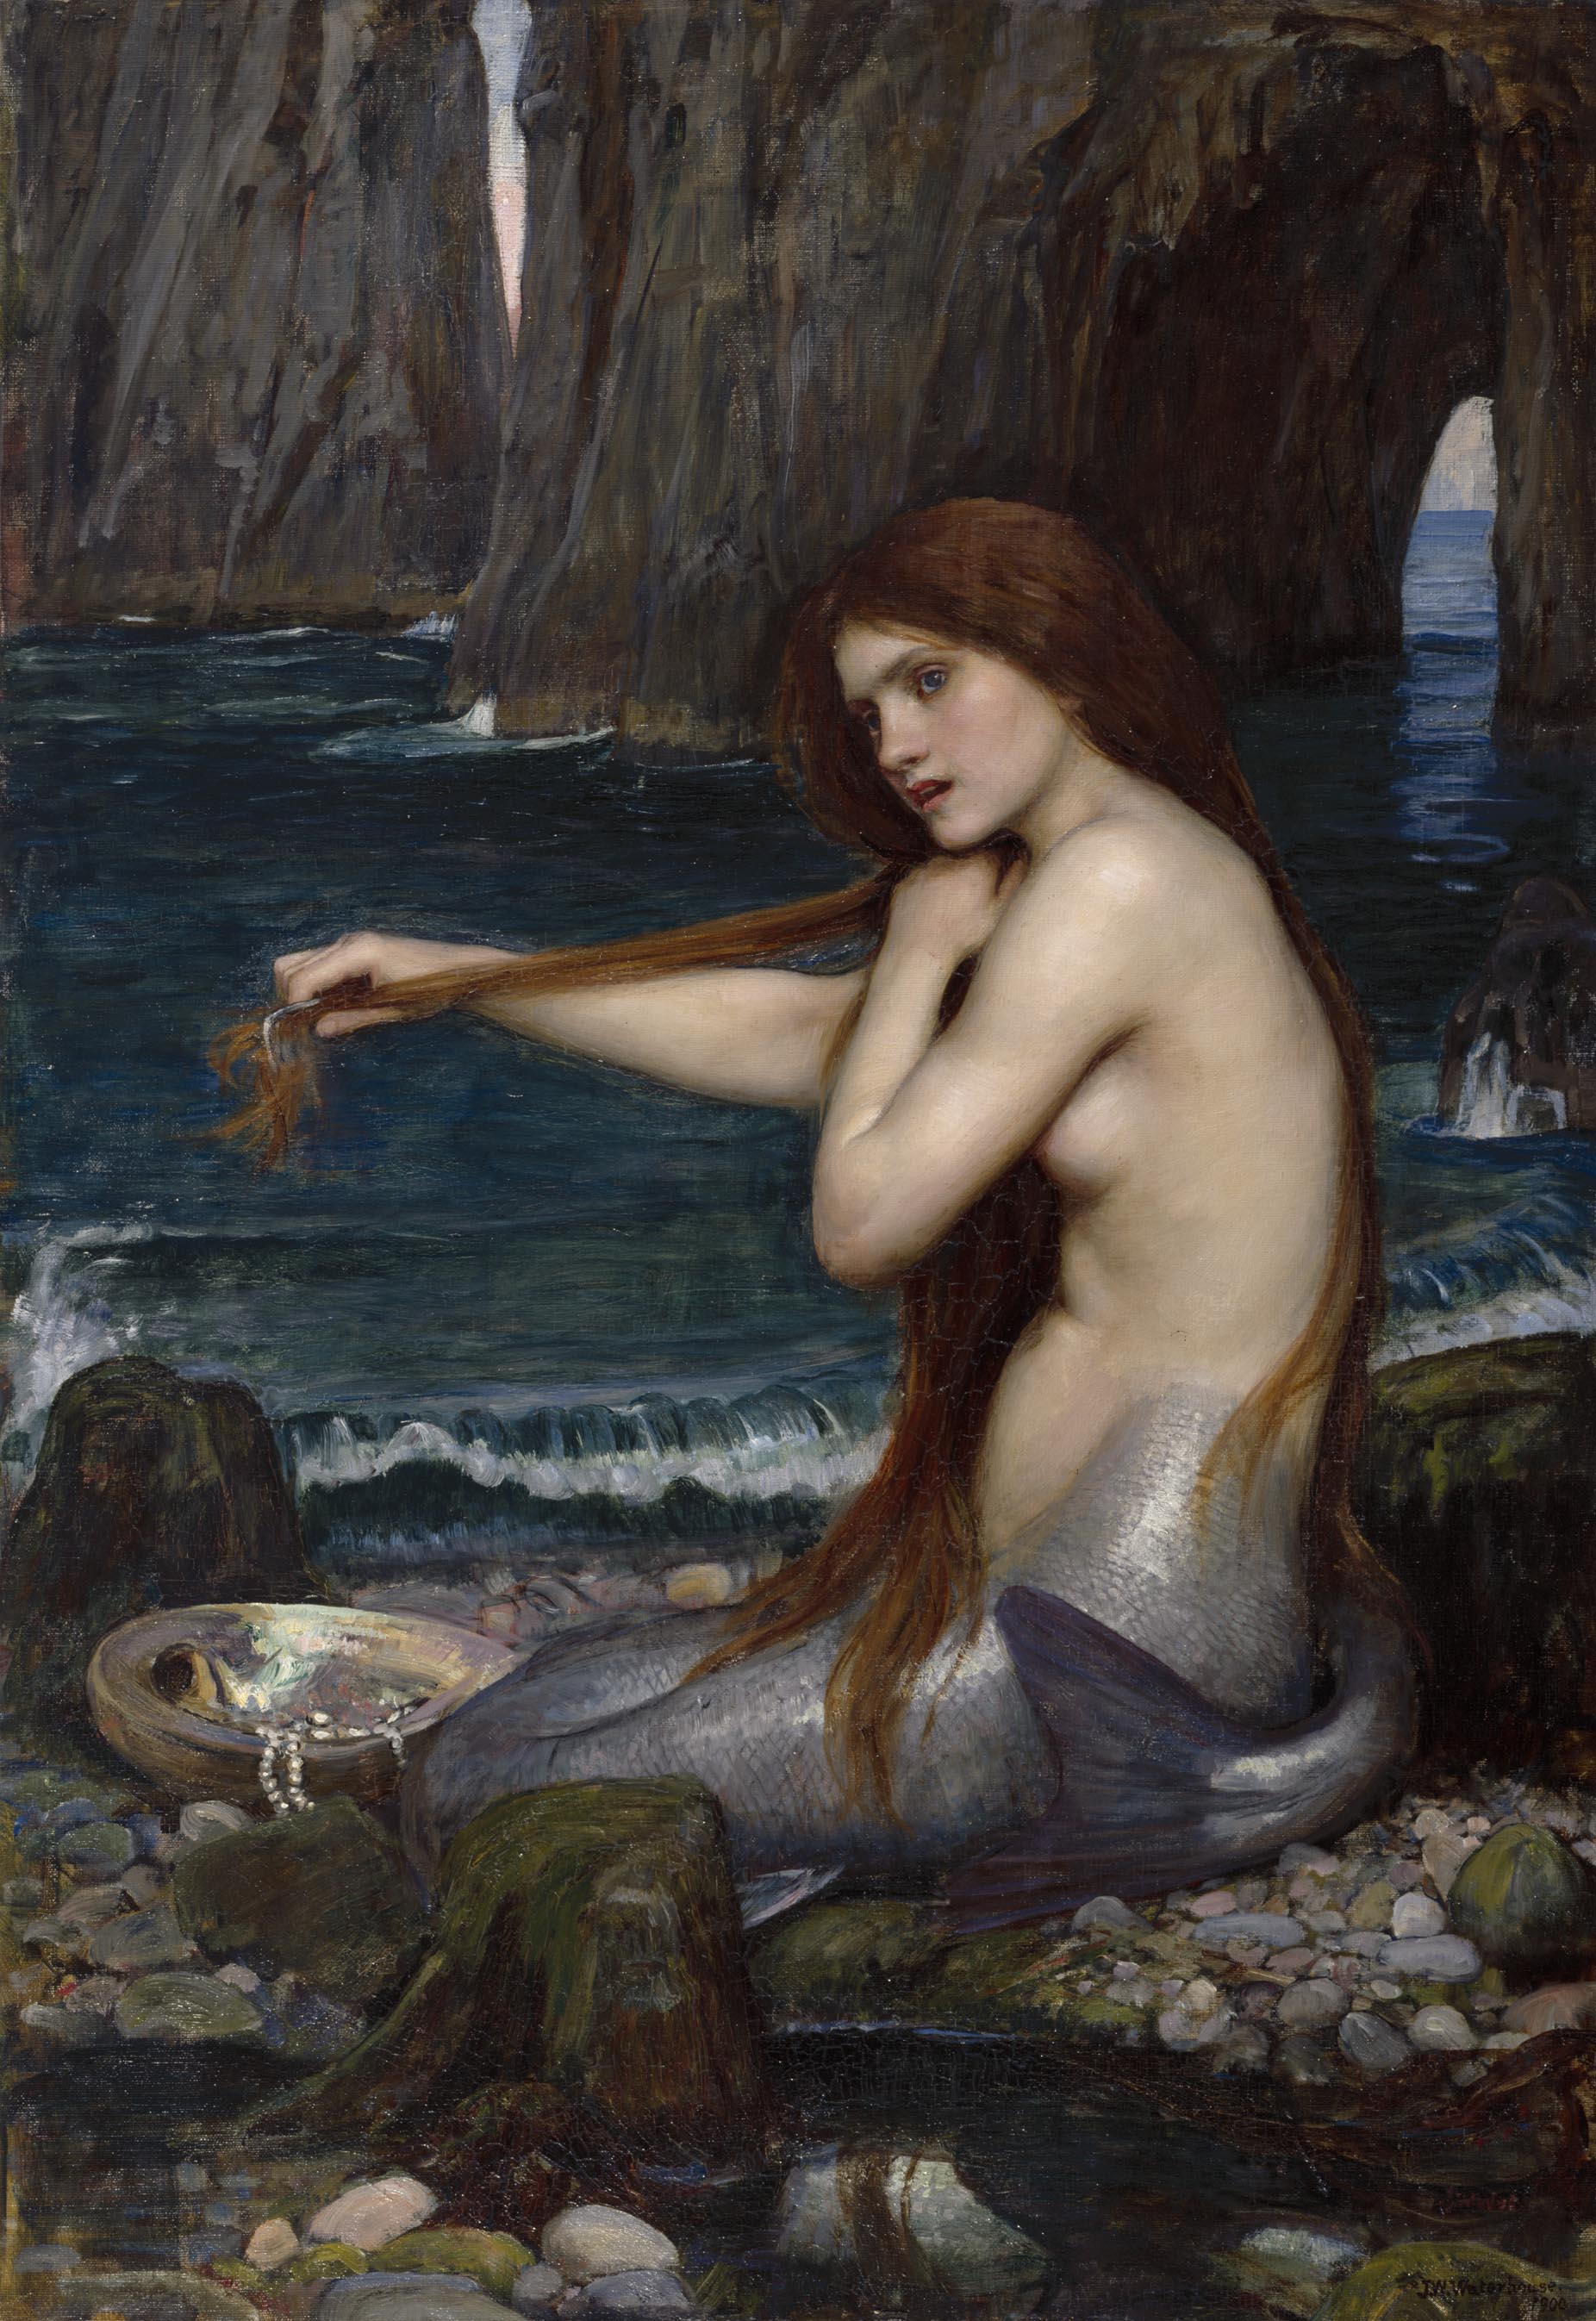 인어(A Mermaid) by John William Waterhouse - 1900 - 96.5 x 66.6 cm 